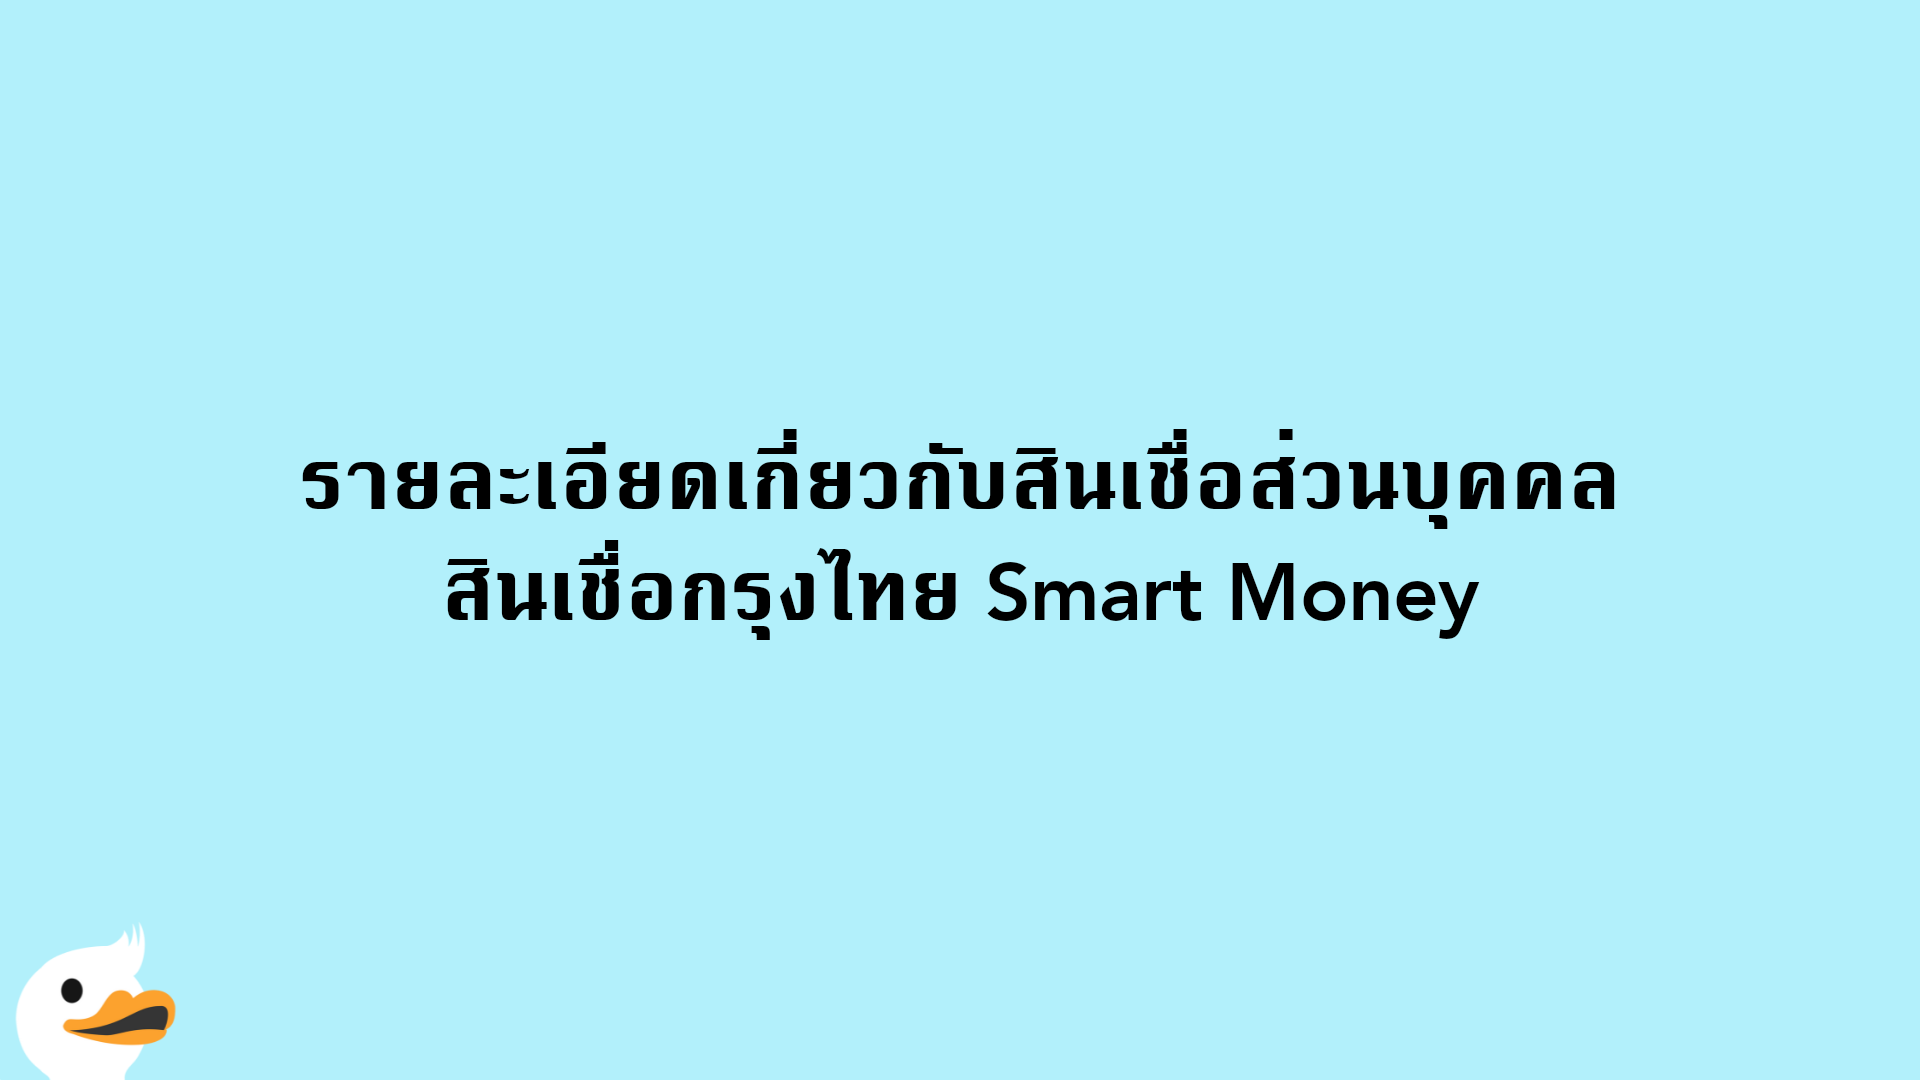 รายละเอียดเกี่ยวกับสินเชื่อส่วนบุคคล สินเชื่อกรุงไทย Smart Money